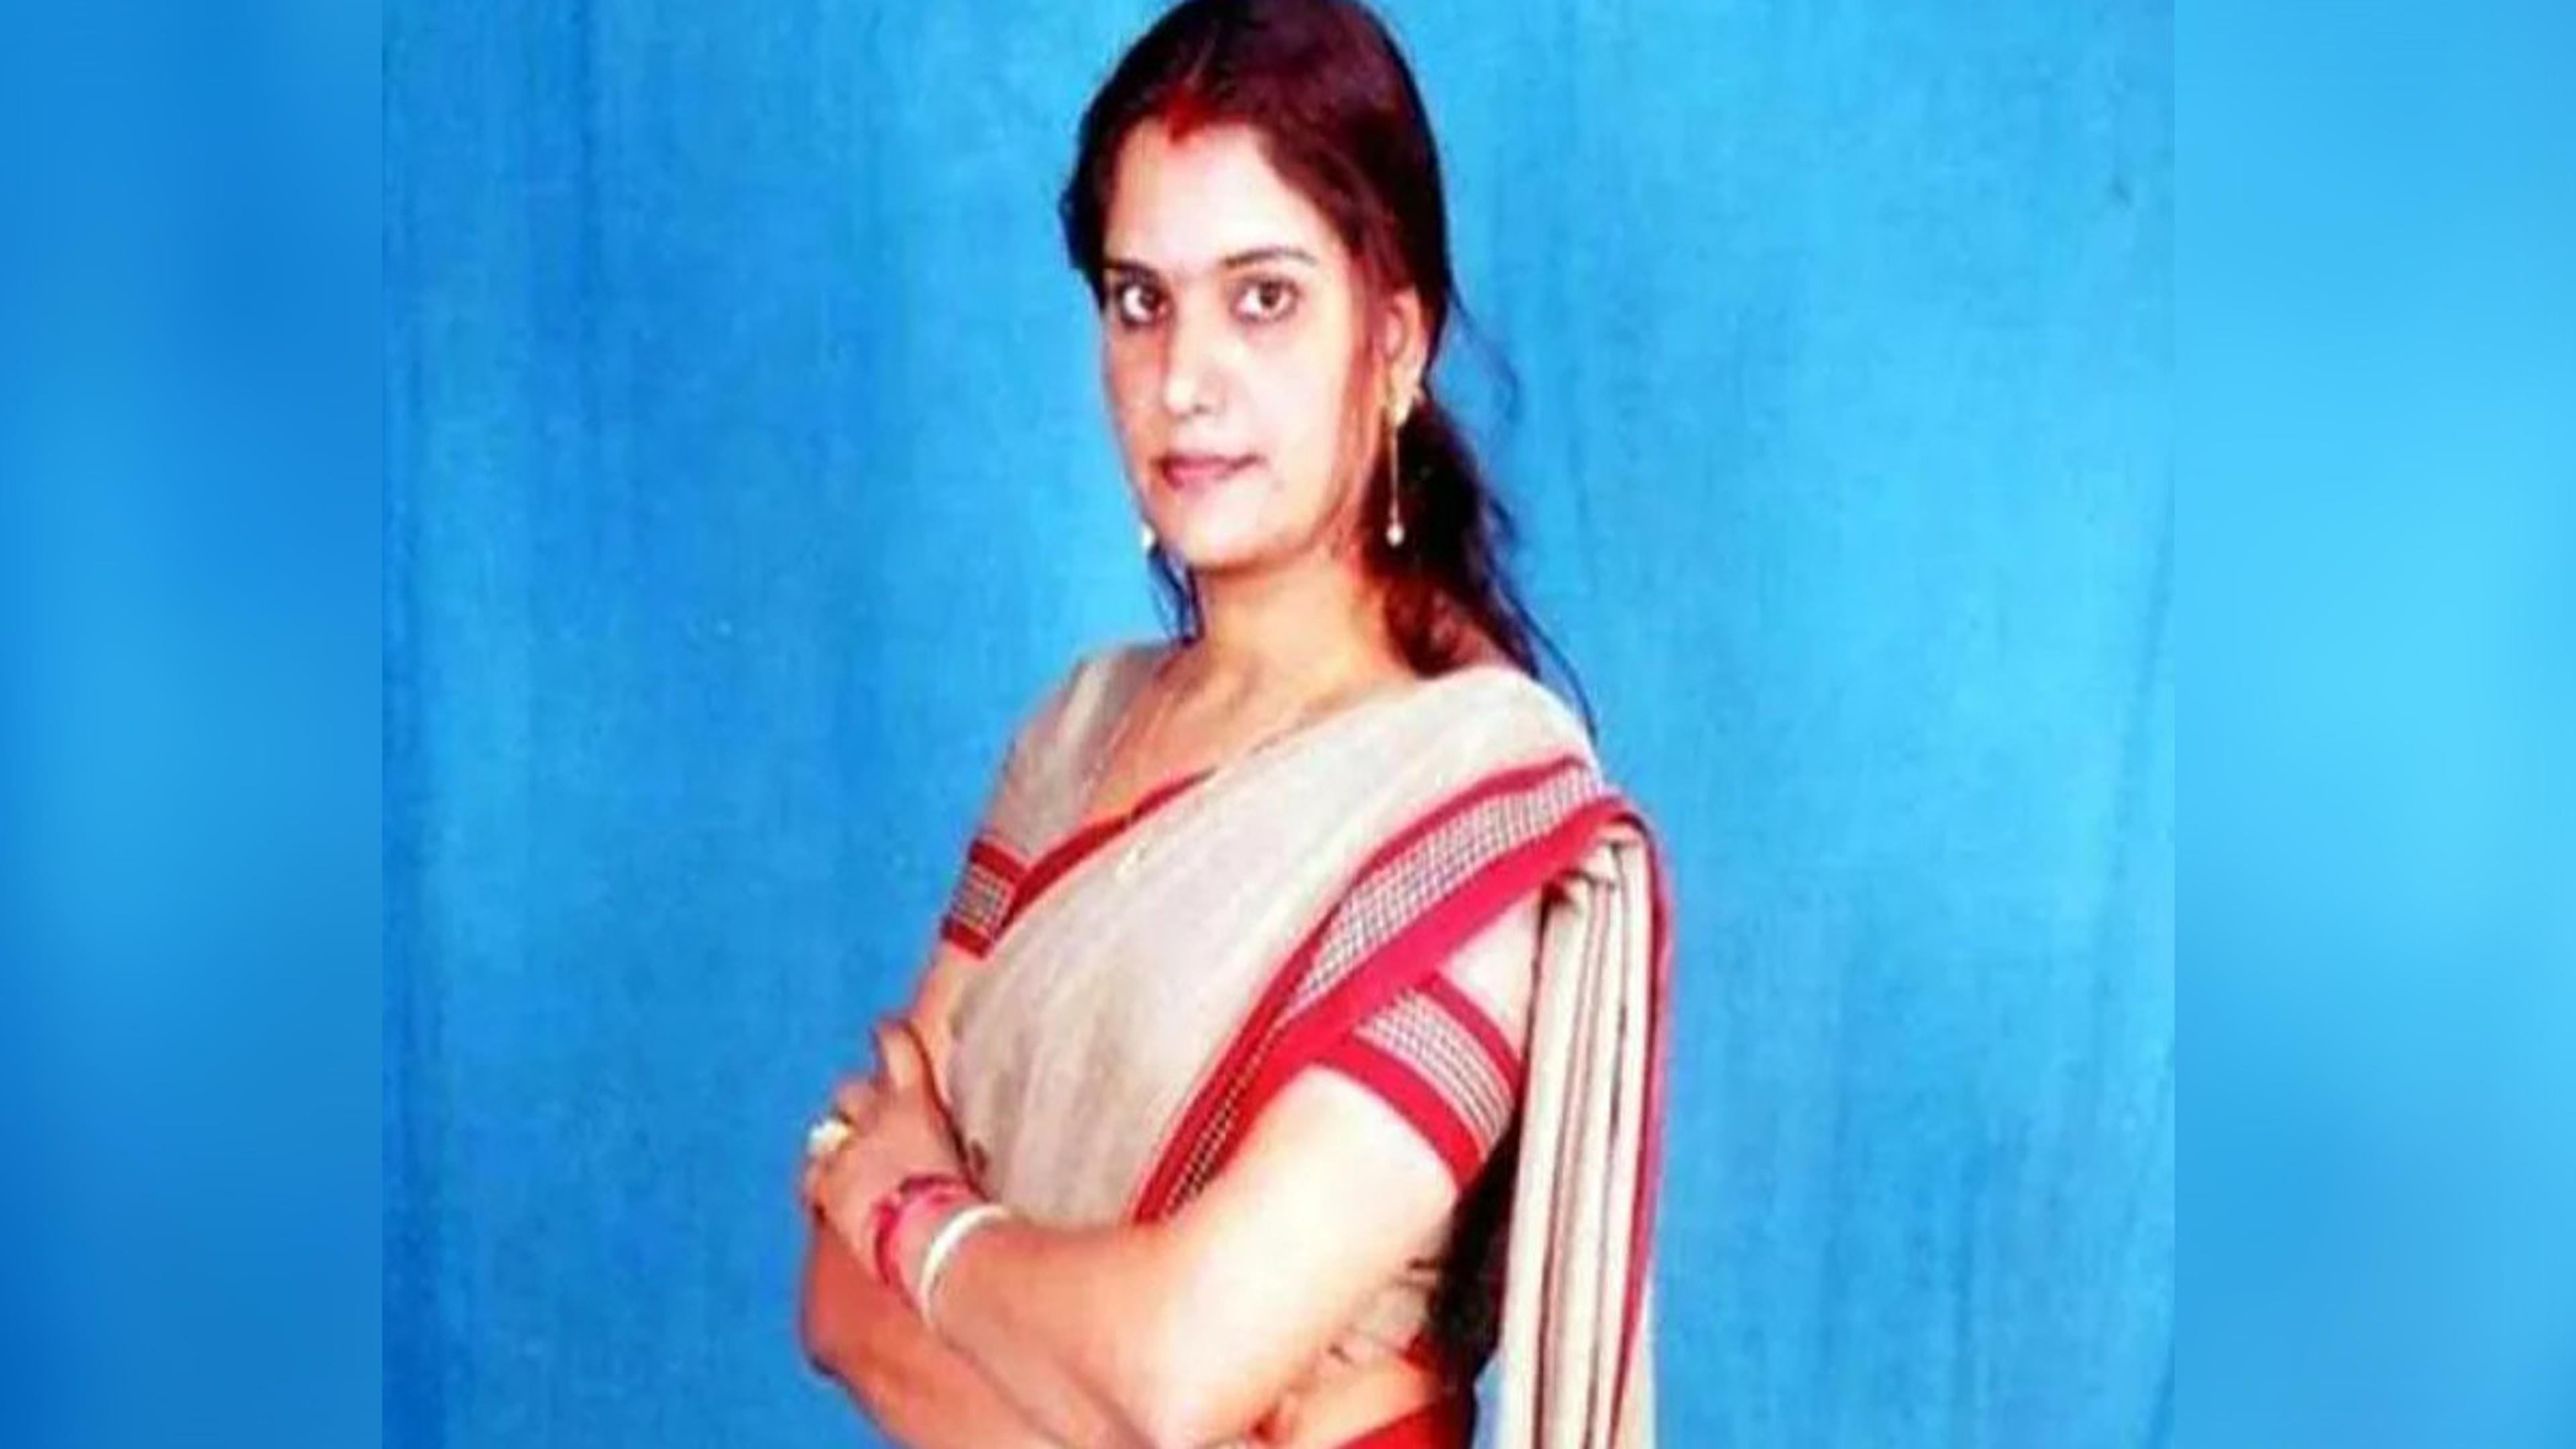 Bhanwari Devi Murder Case : फिर चर्चा में आया भंवरी देवी हत्याकांड, कोर्ट ने
दिया ये आदेश